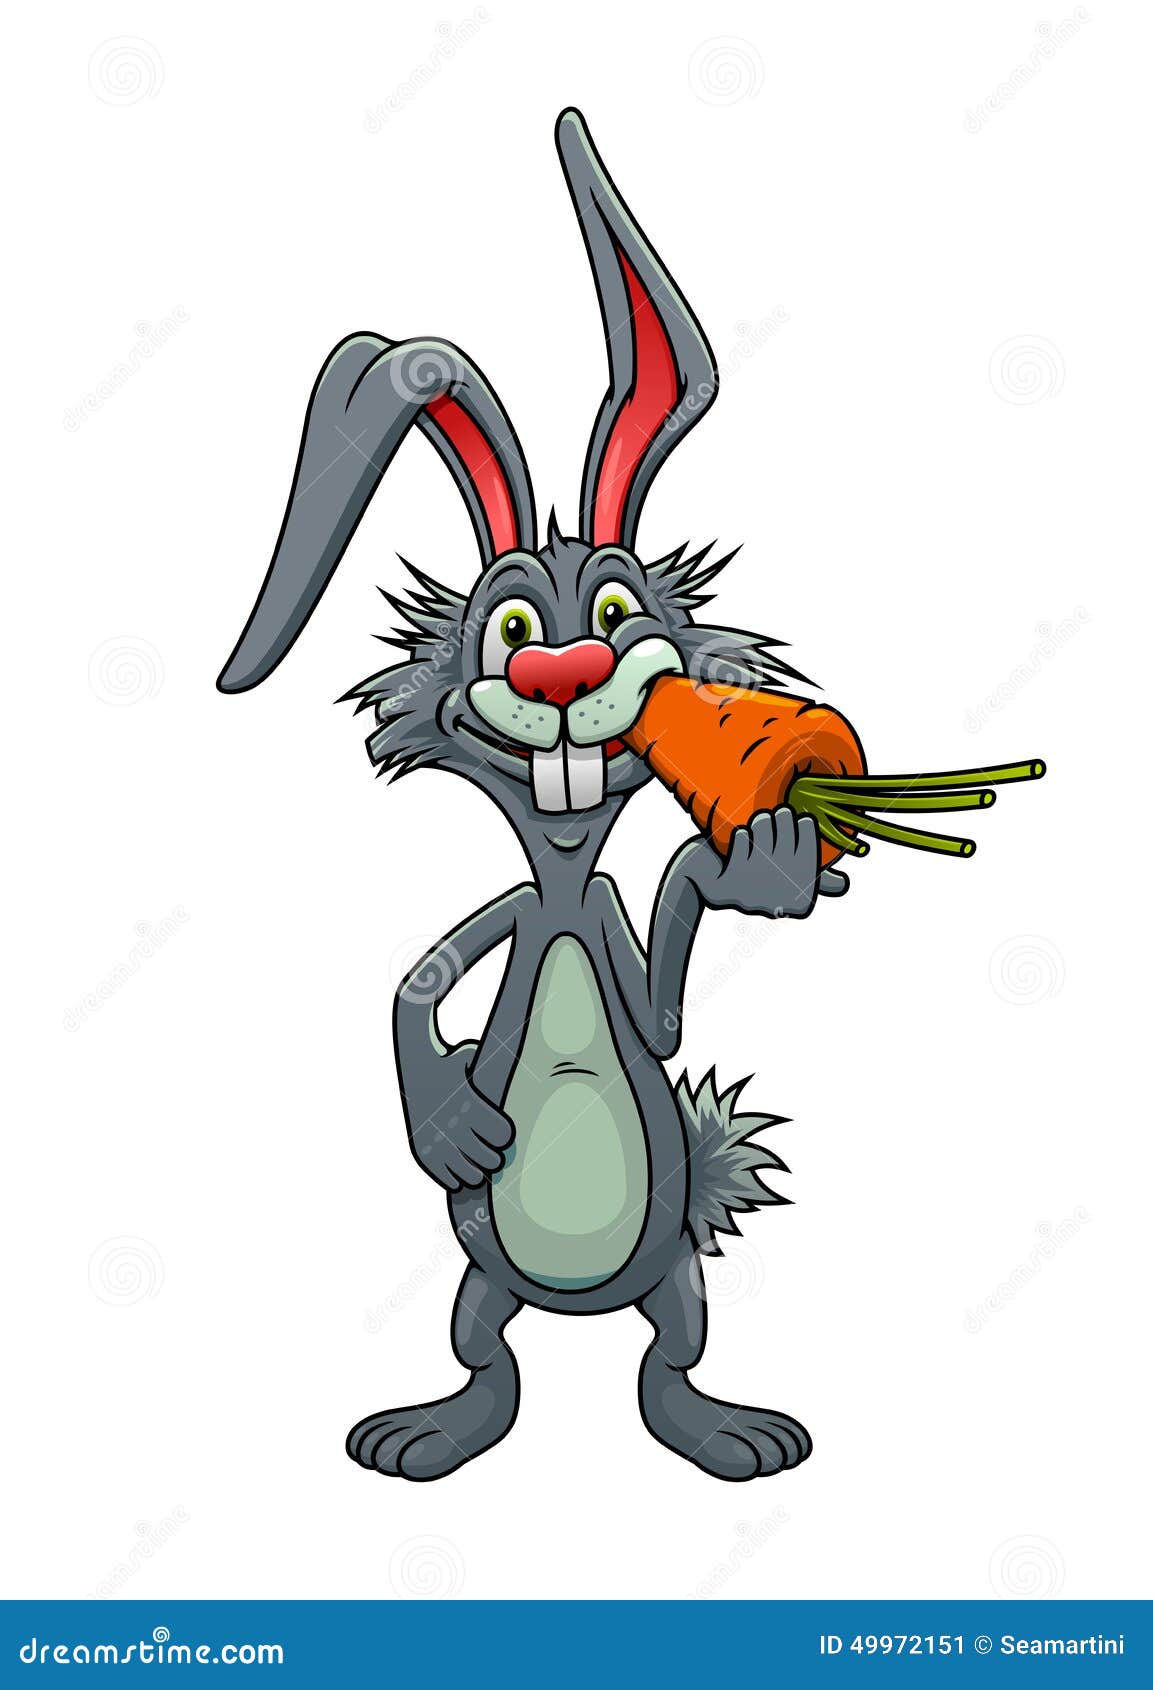 拿着胡萝卜的粉色卡通小兔子插画图片素材_ID:419191800-Veer图库